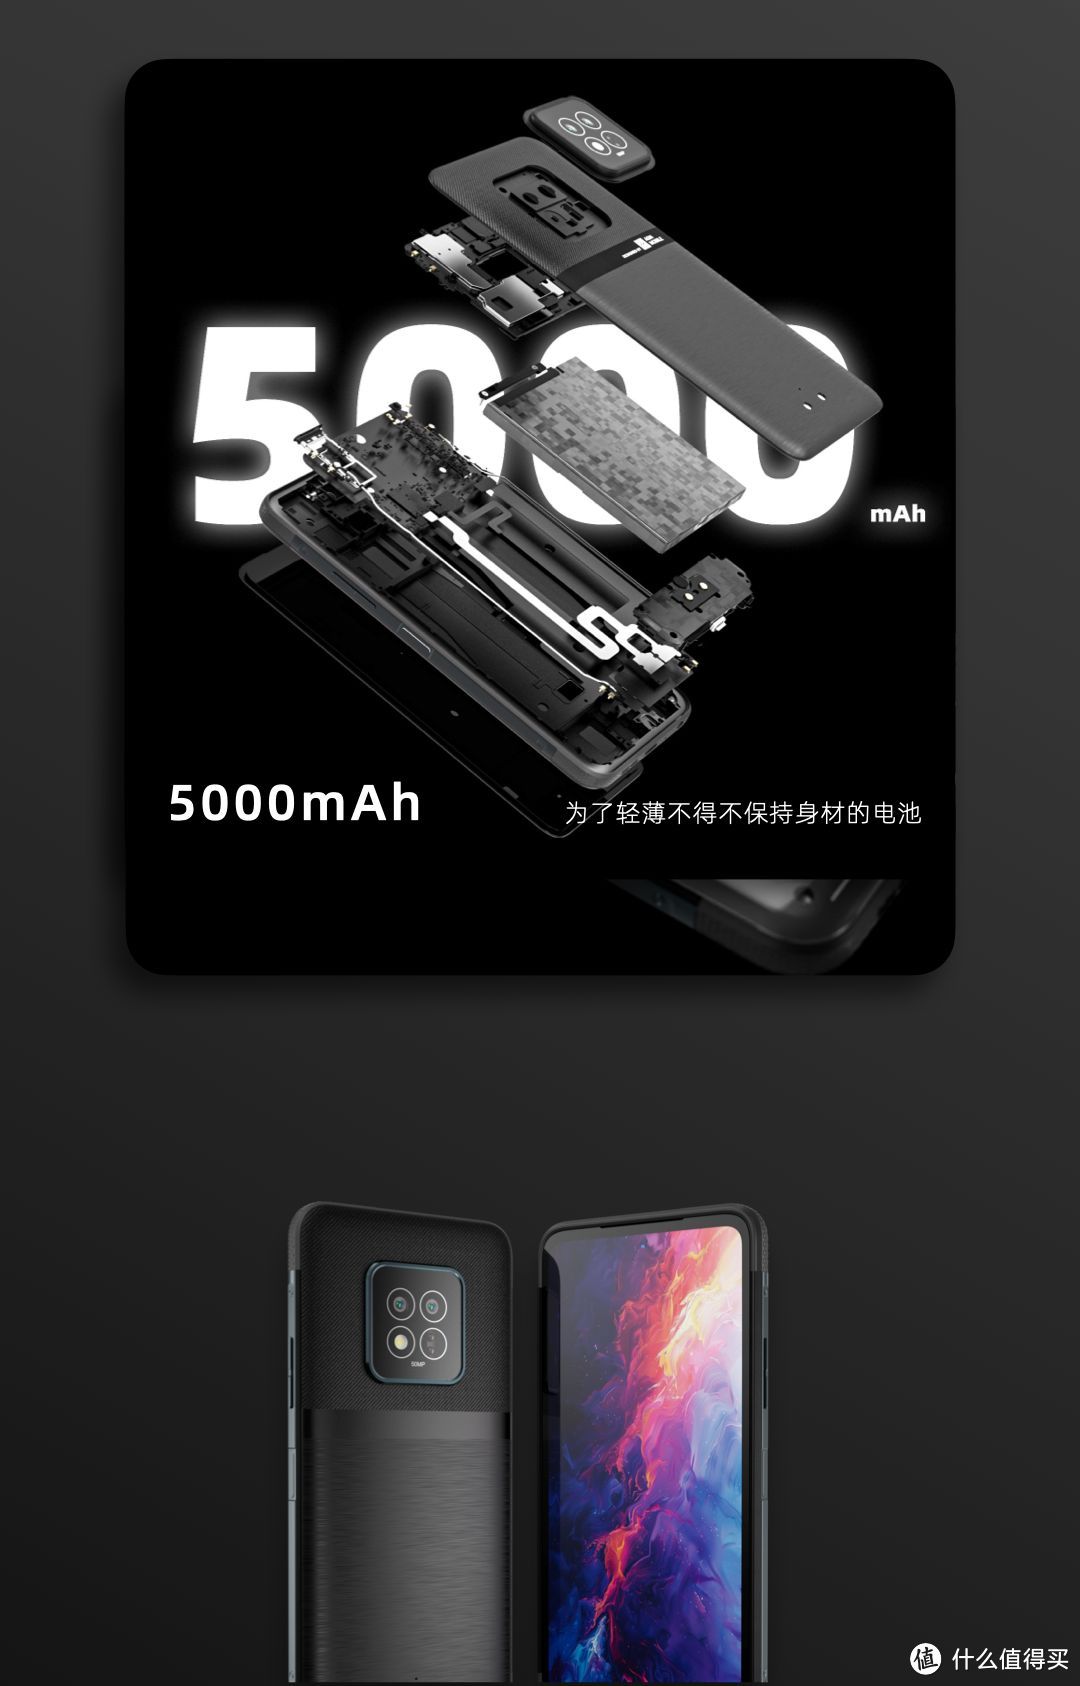 售价2799元！轻薄5G三防手机AGM X6正式发布